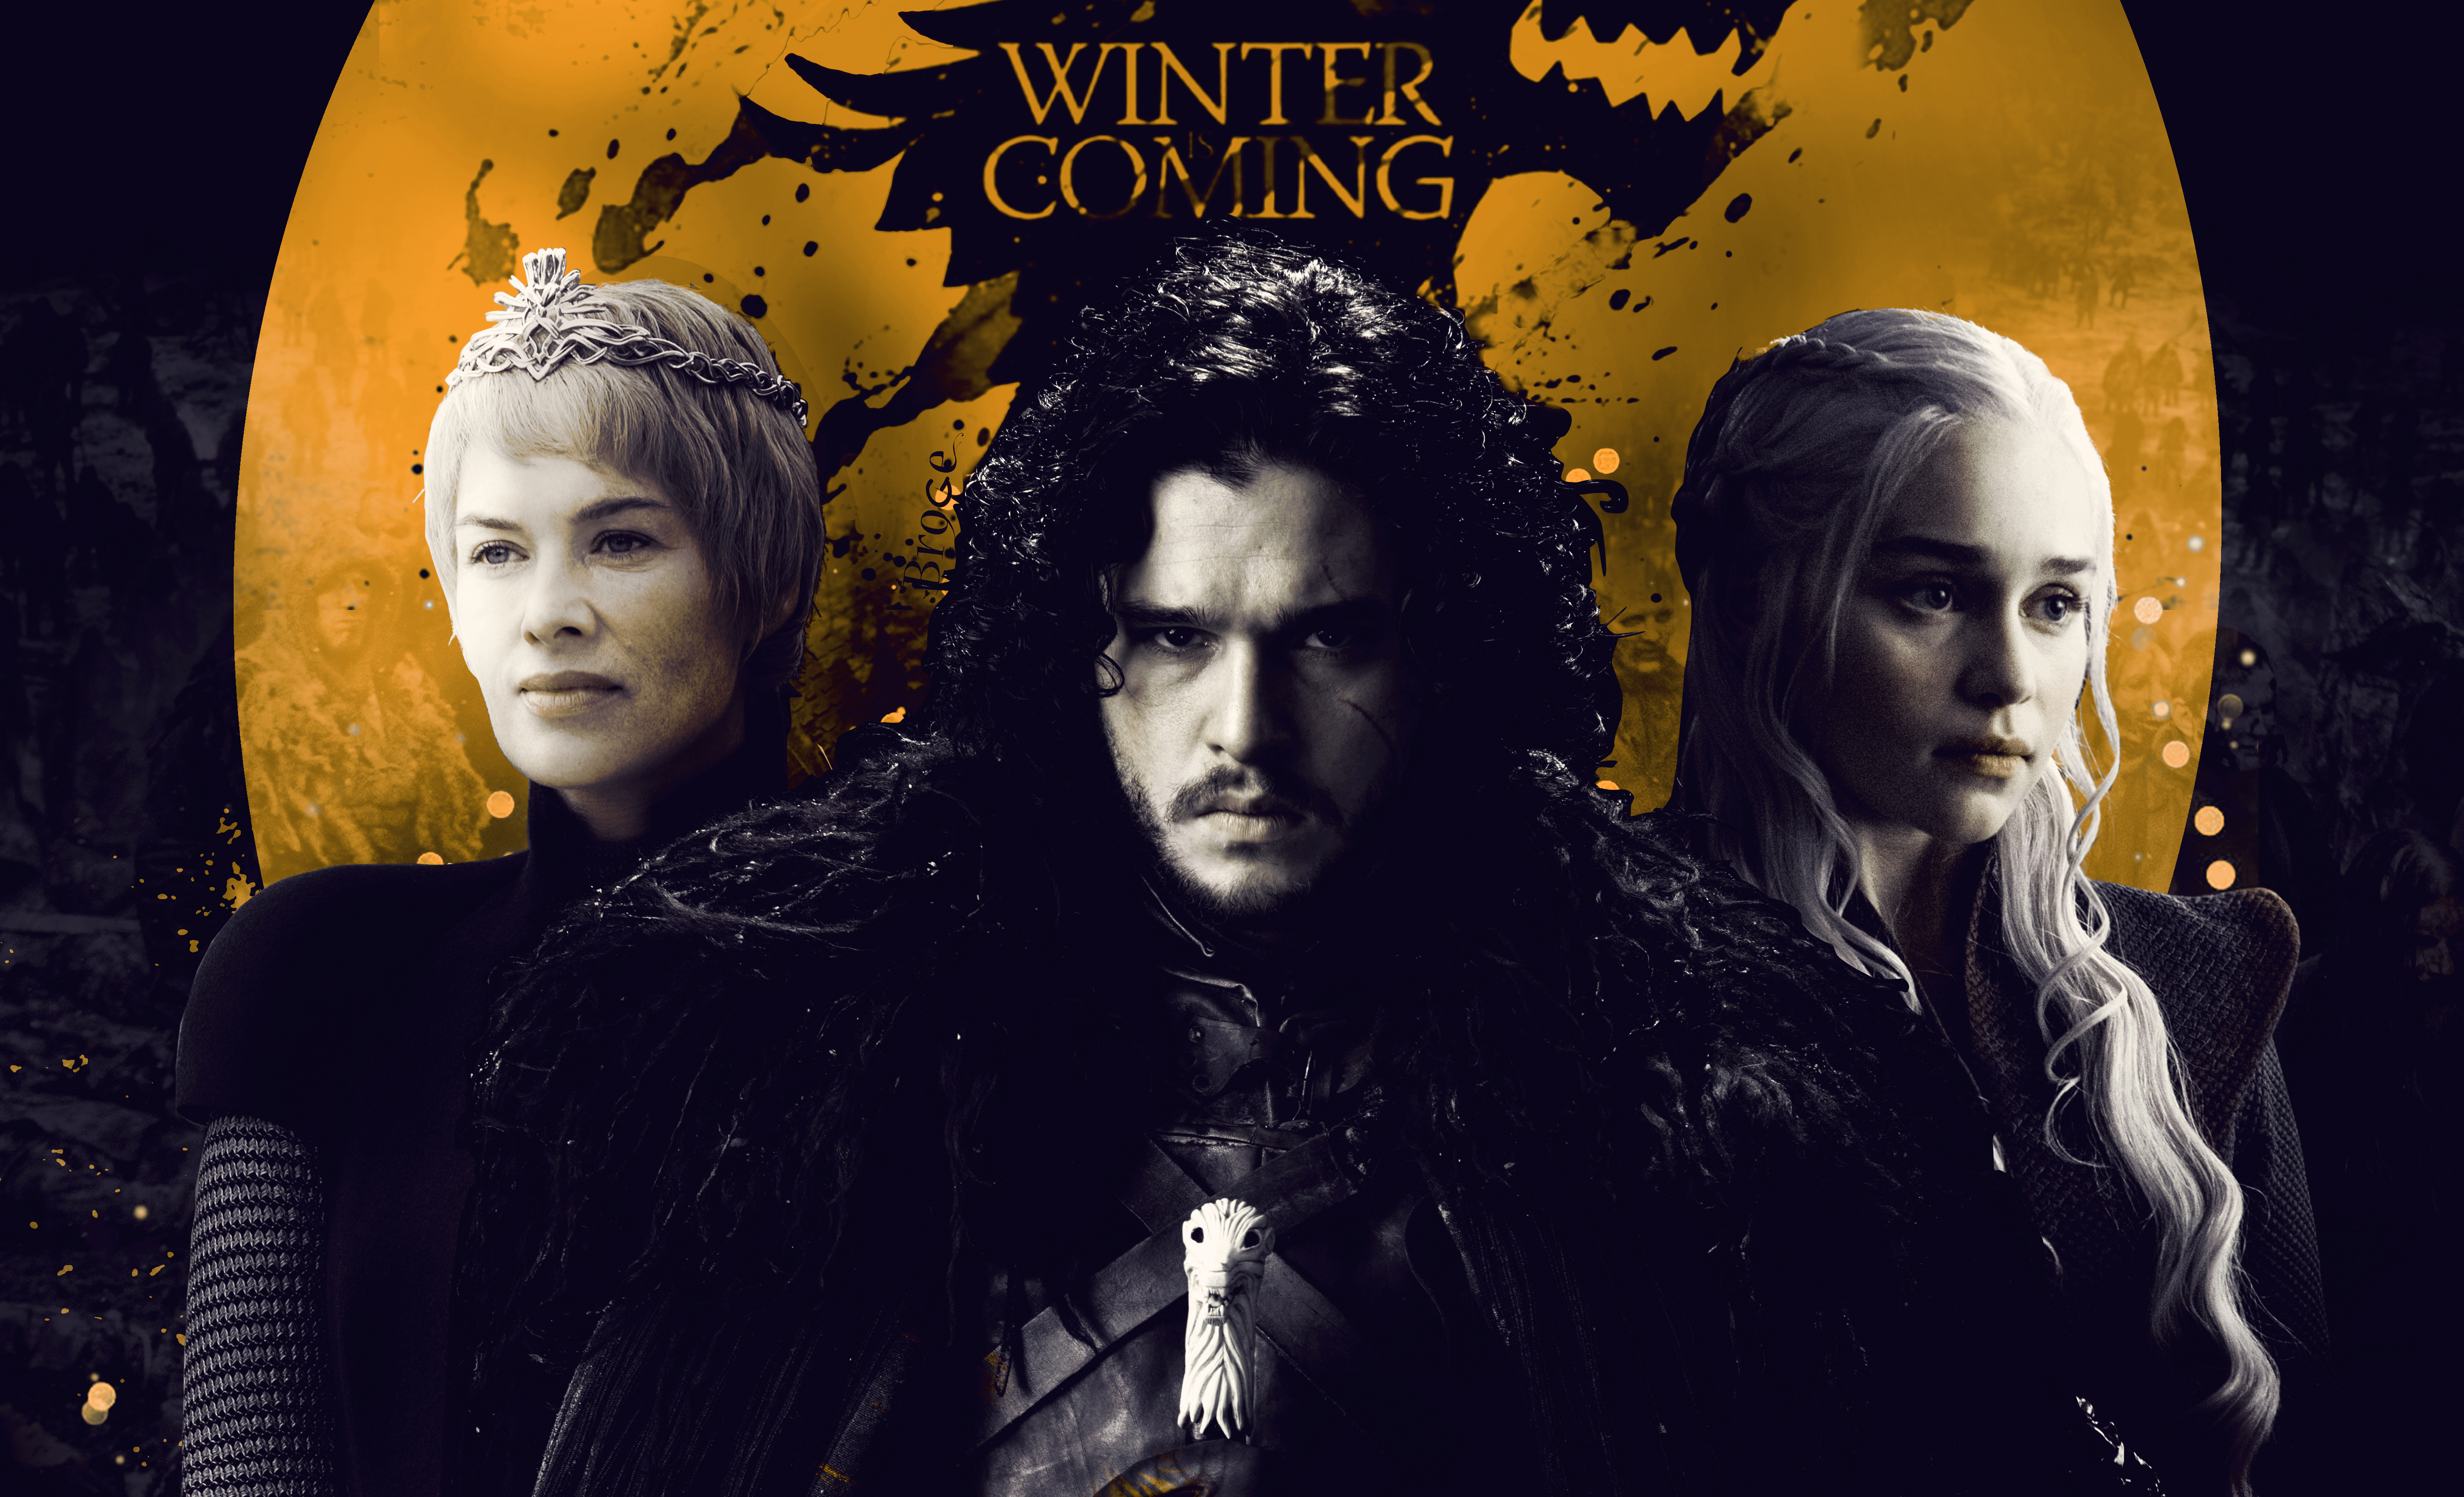 Cersei Lannister Daenerys Targaryen Emilia Clarke Jon Snow Kit Harington Lena Headey 5547x3370